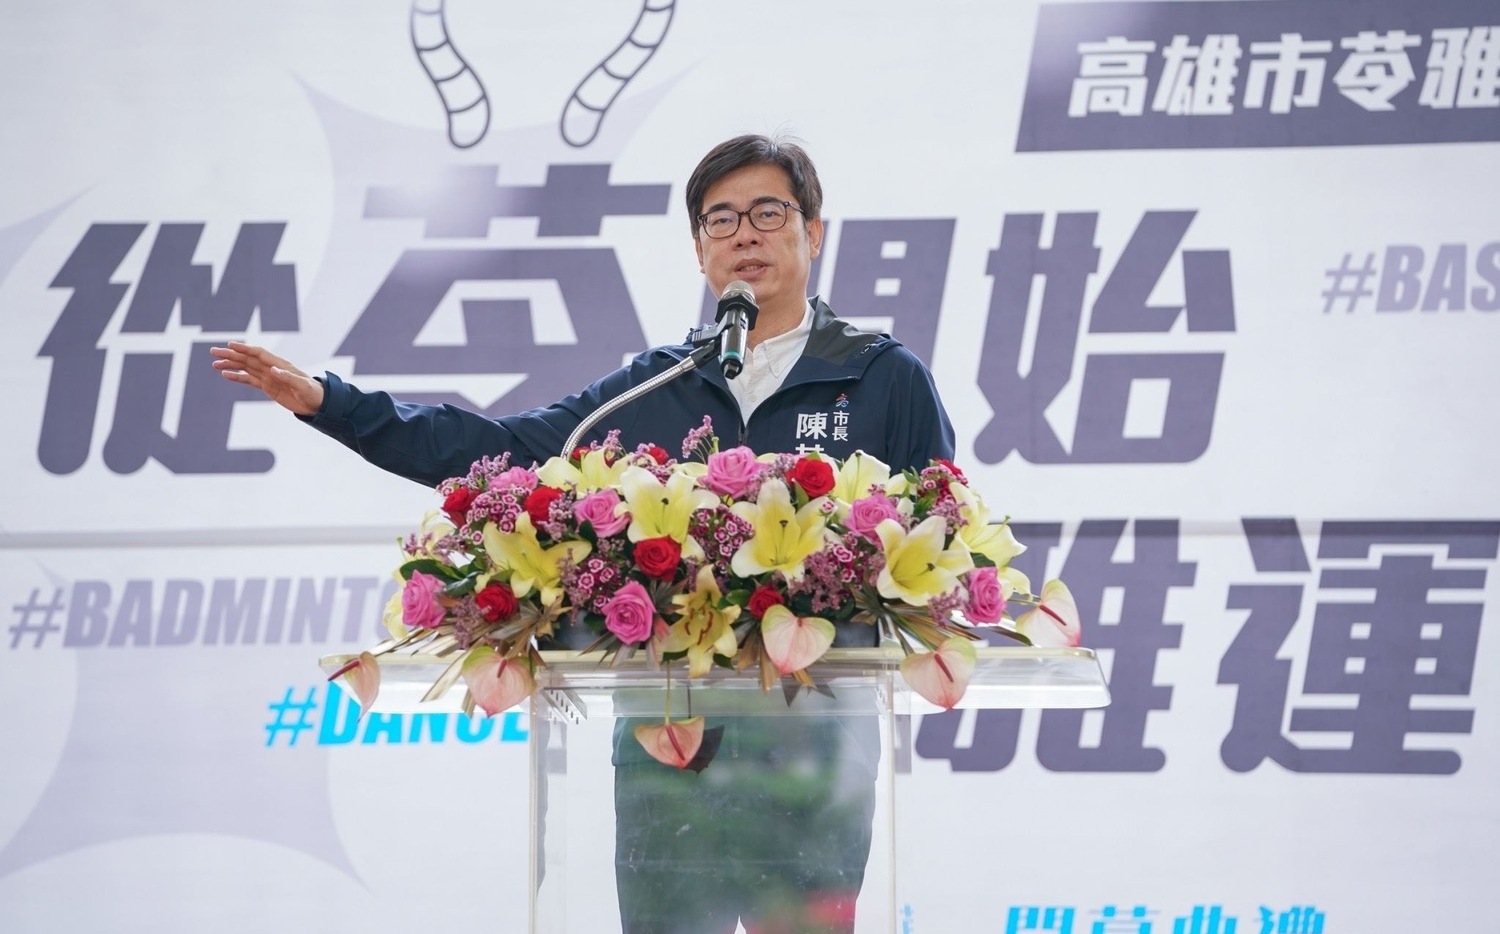 0到13＋1！ 陳其邁拍板設置第14座國民運動中心 | 政治 | New